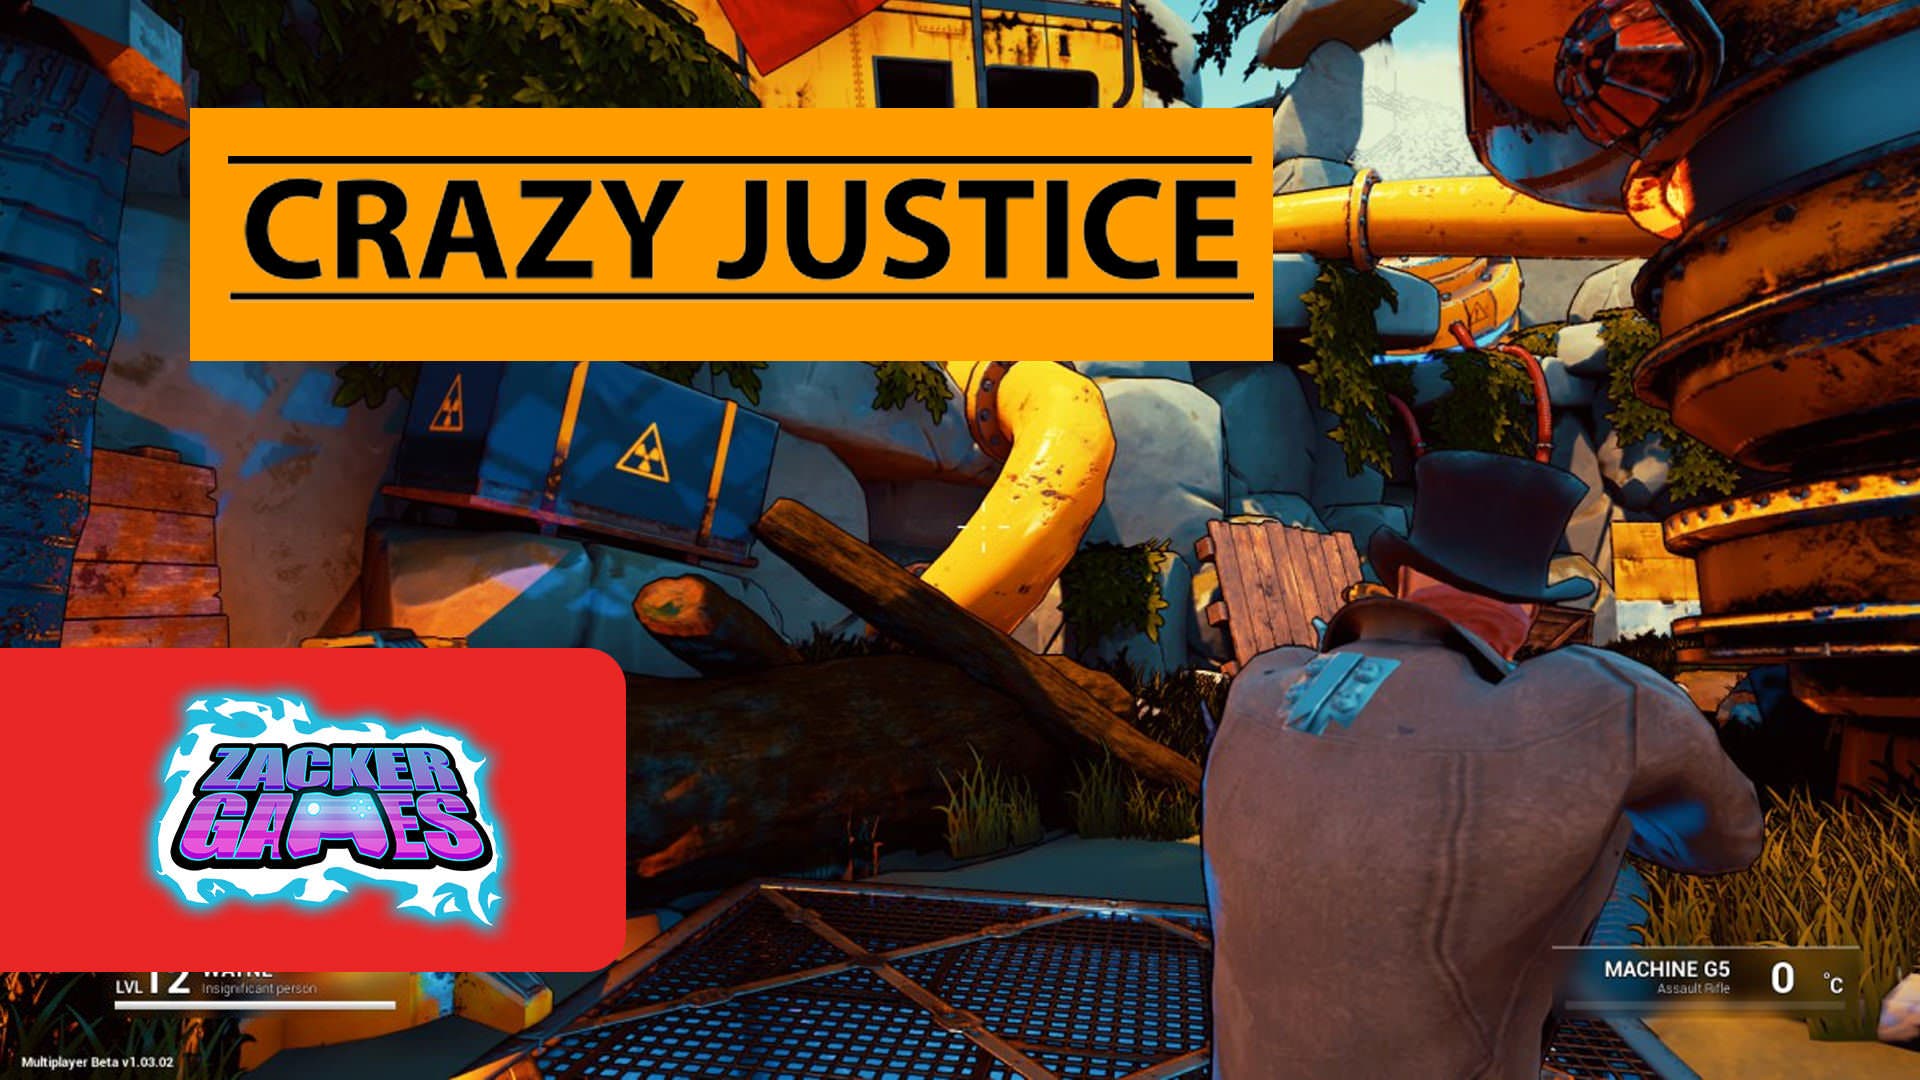 [Video] ZackerGames nos presenta el modo Battle Royale para Crazy Justice